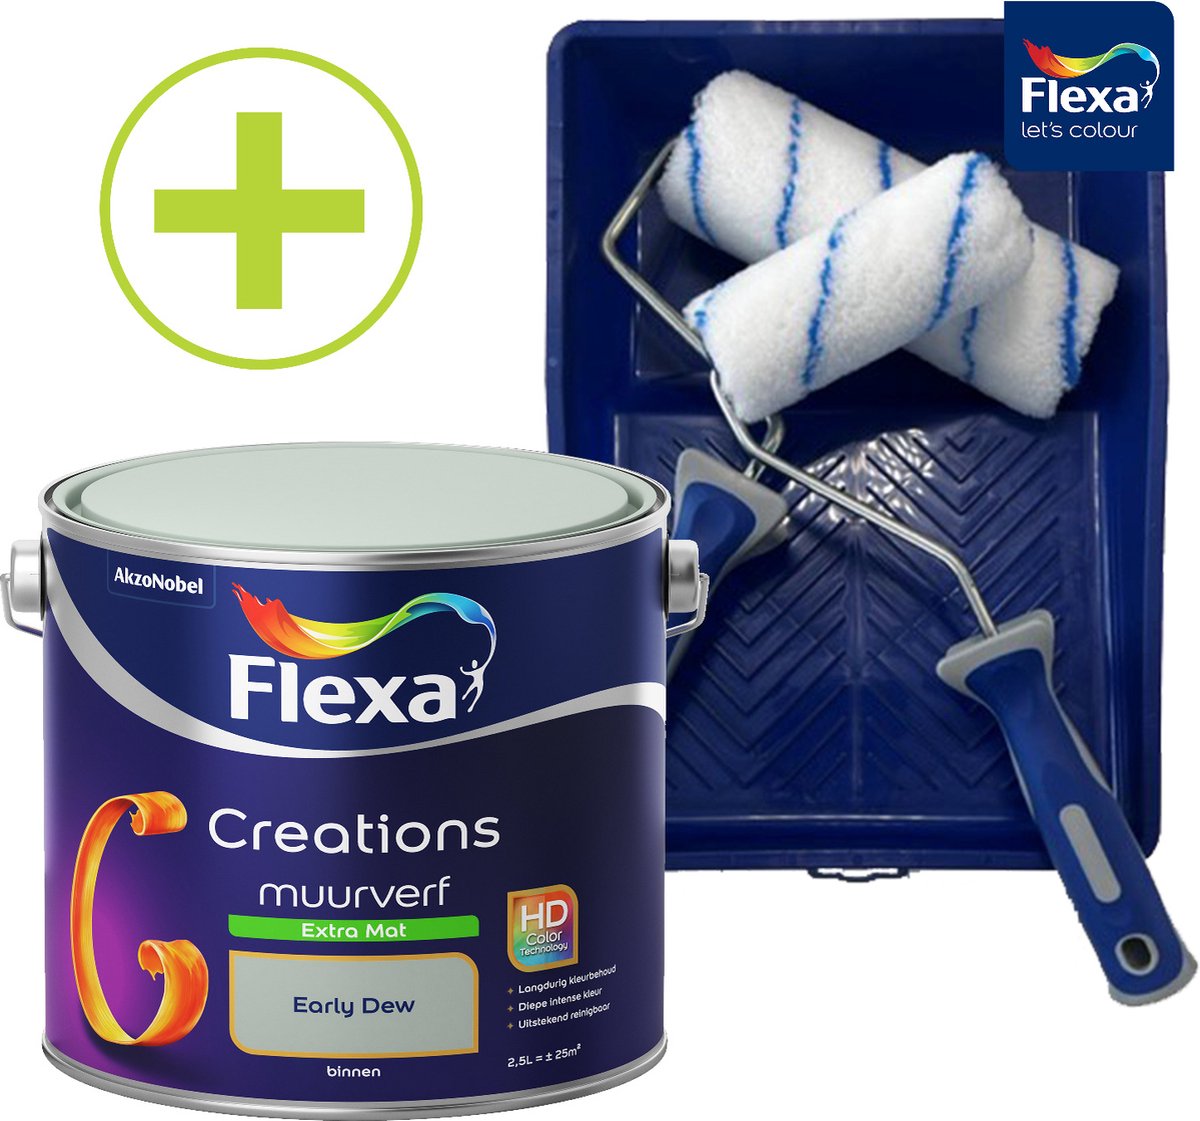 Flexa Creations Muurverf - Extra Mat - Early Dew - Groen - 2,5 liter + Flexa Muurverfset 5-delig